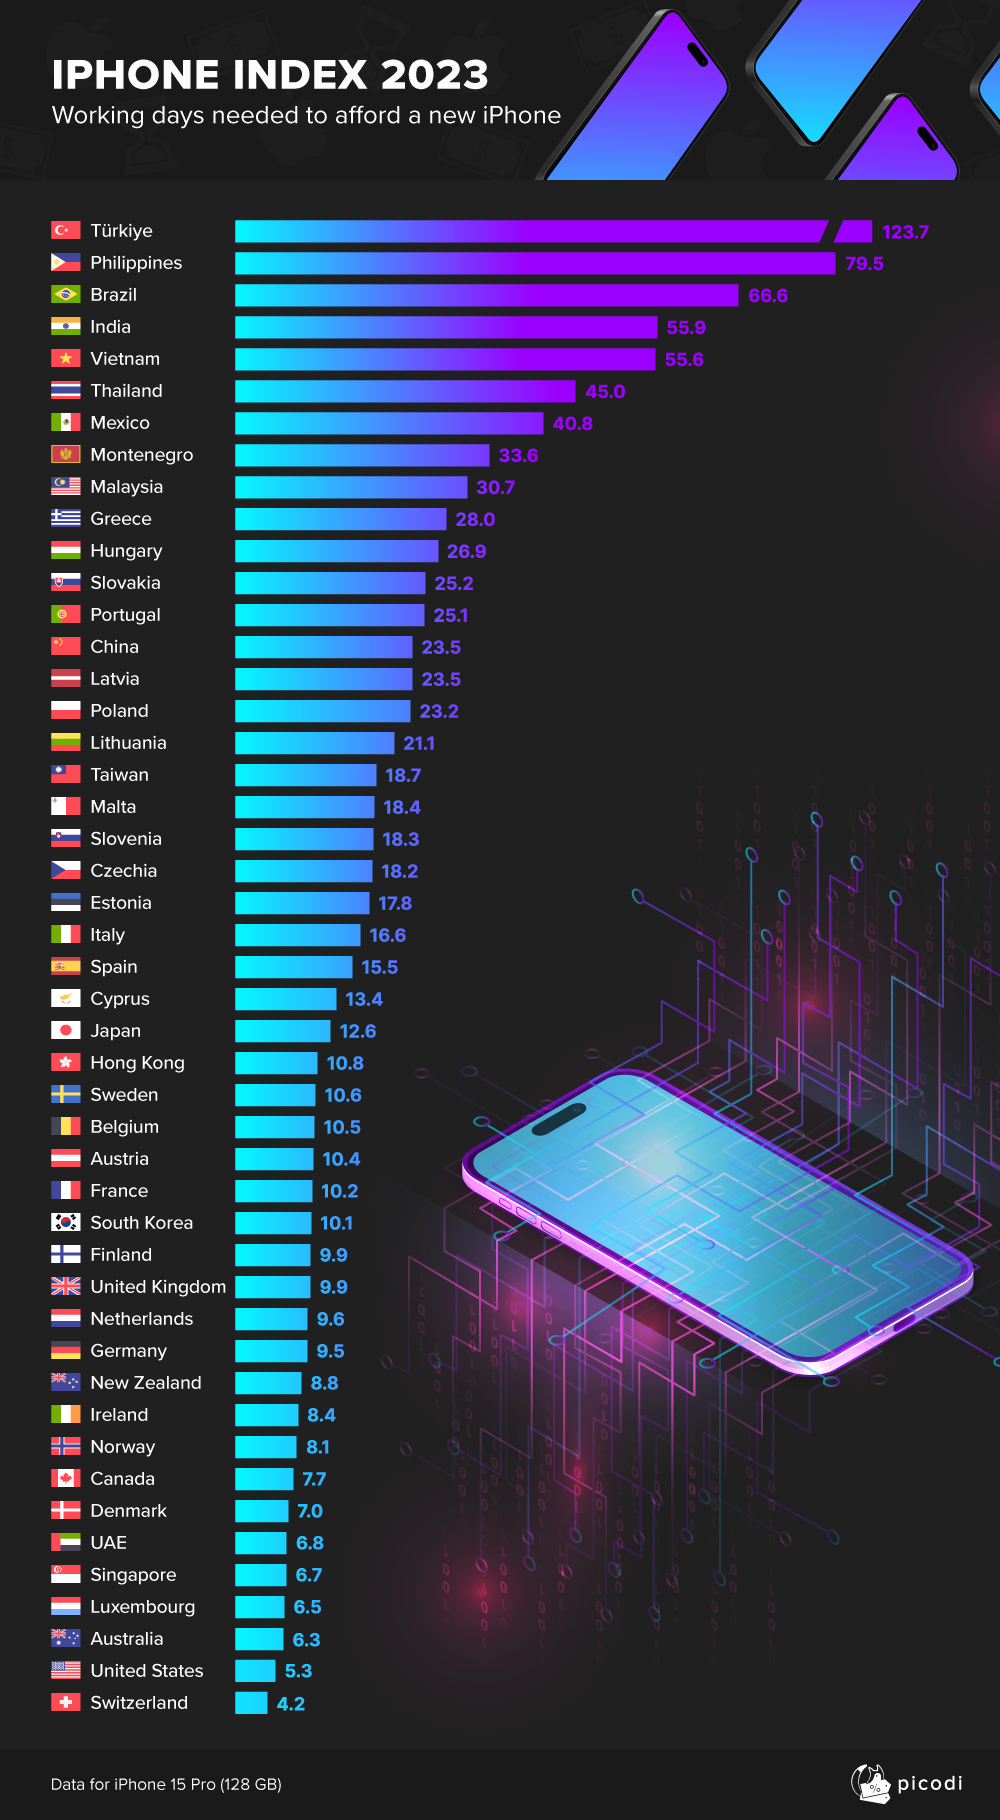 Bảng xếp hạng số ngày công cần thiết để mua iPhone 15 Pro 128 GB tại các quốc gia và vùng lãnh thổ. Nguồn: Picodi